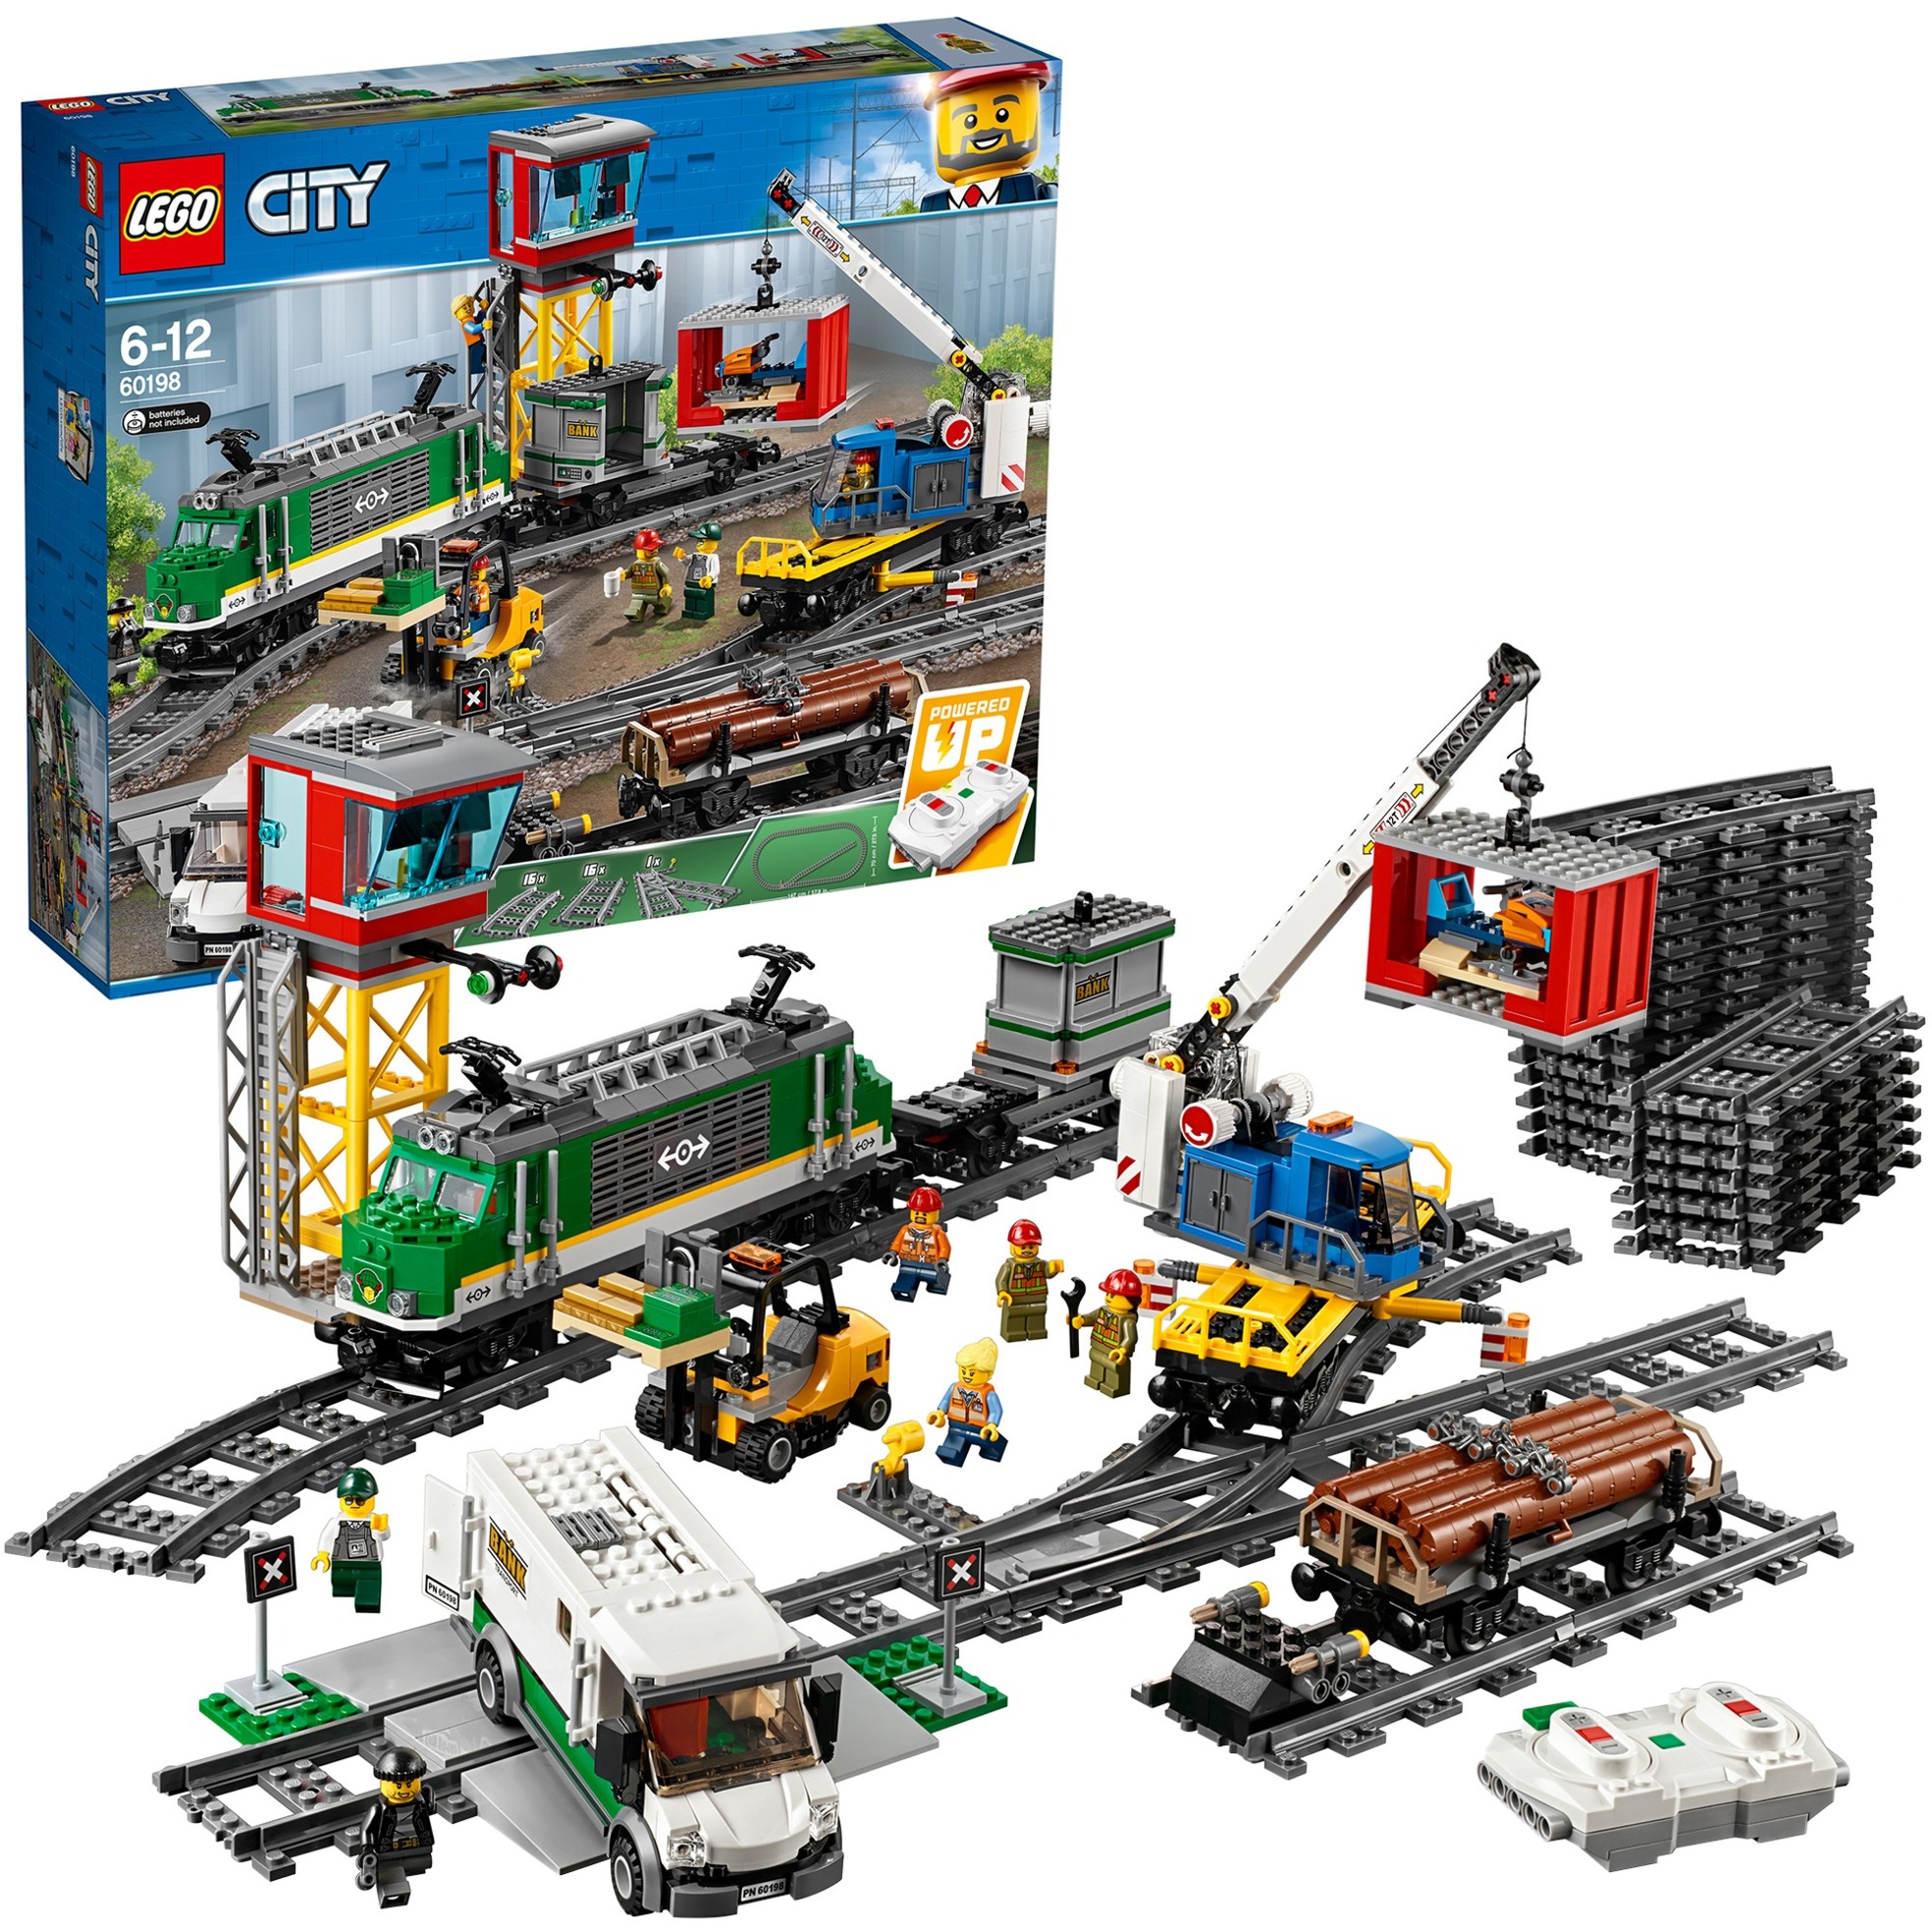 Spielzeug: Lego 60198 City Güterzug